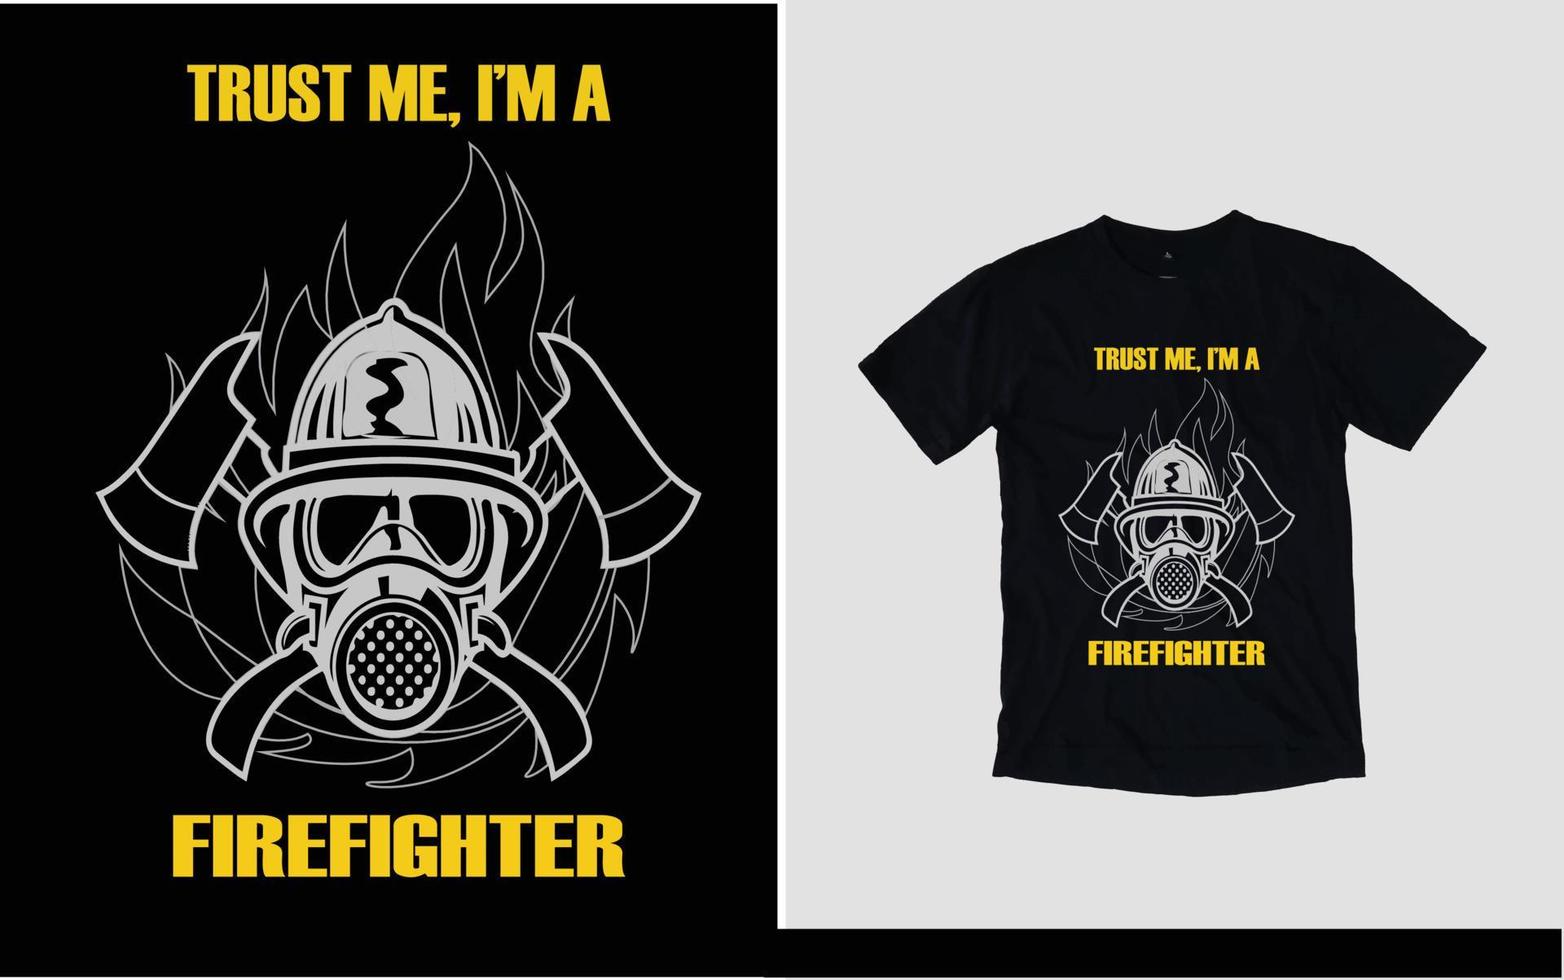 croyez-moi, je suis un design de t-shirt de pompier vecteur